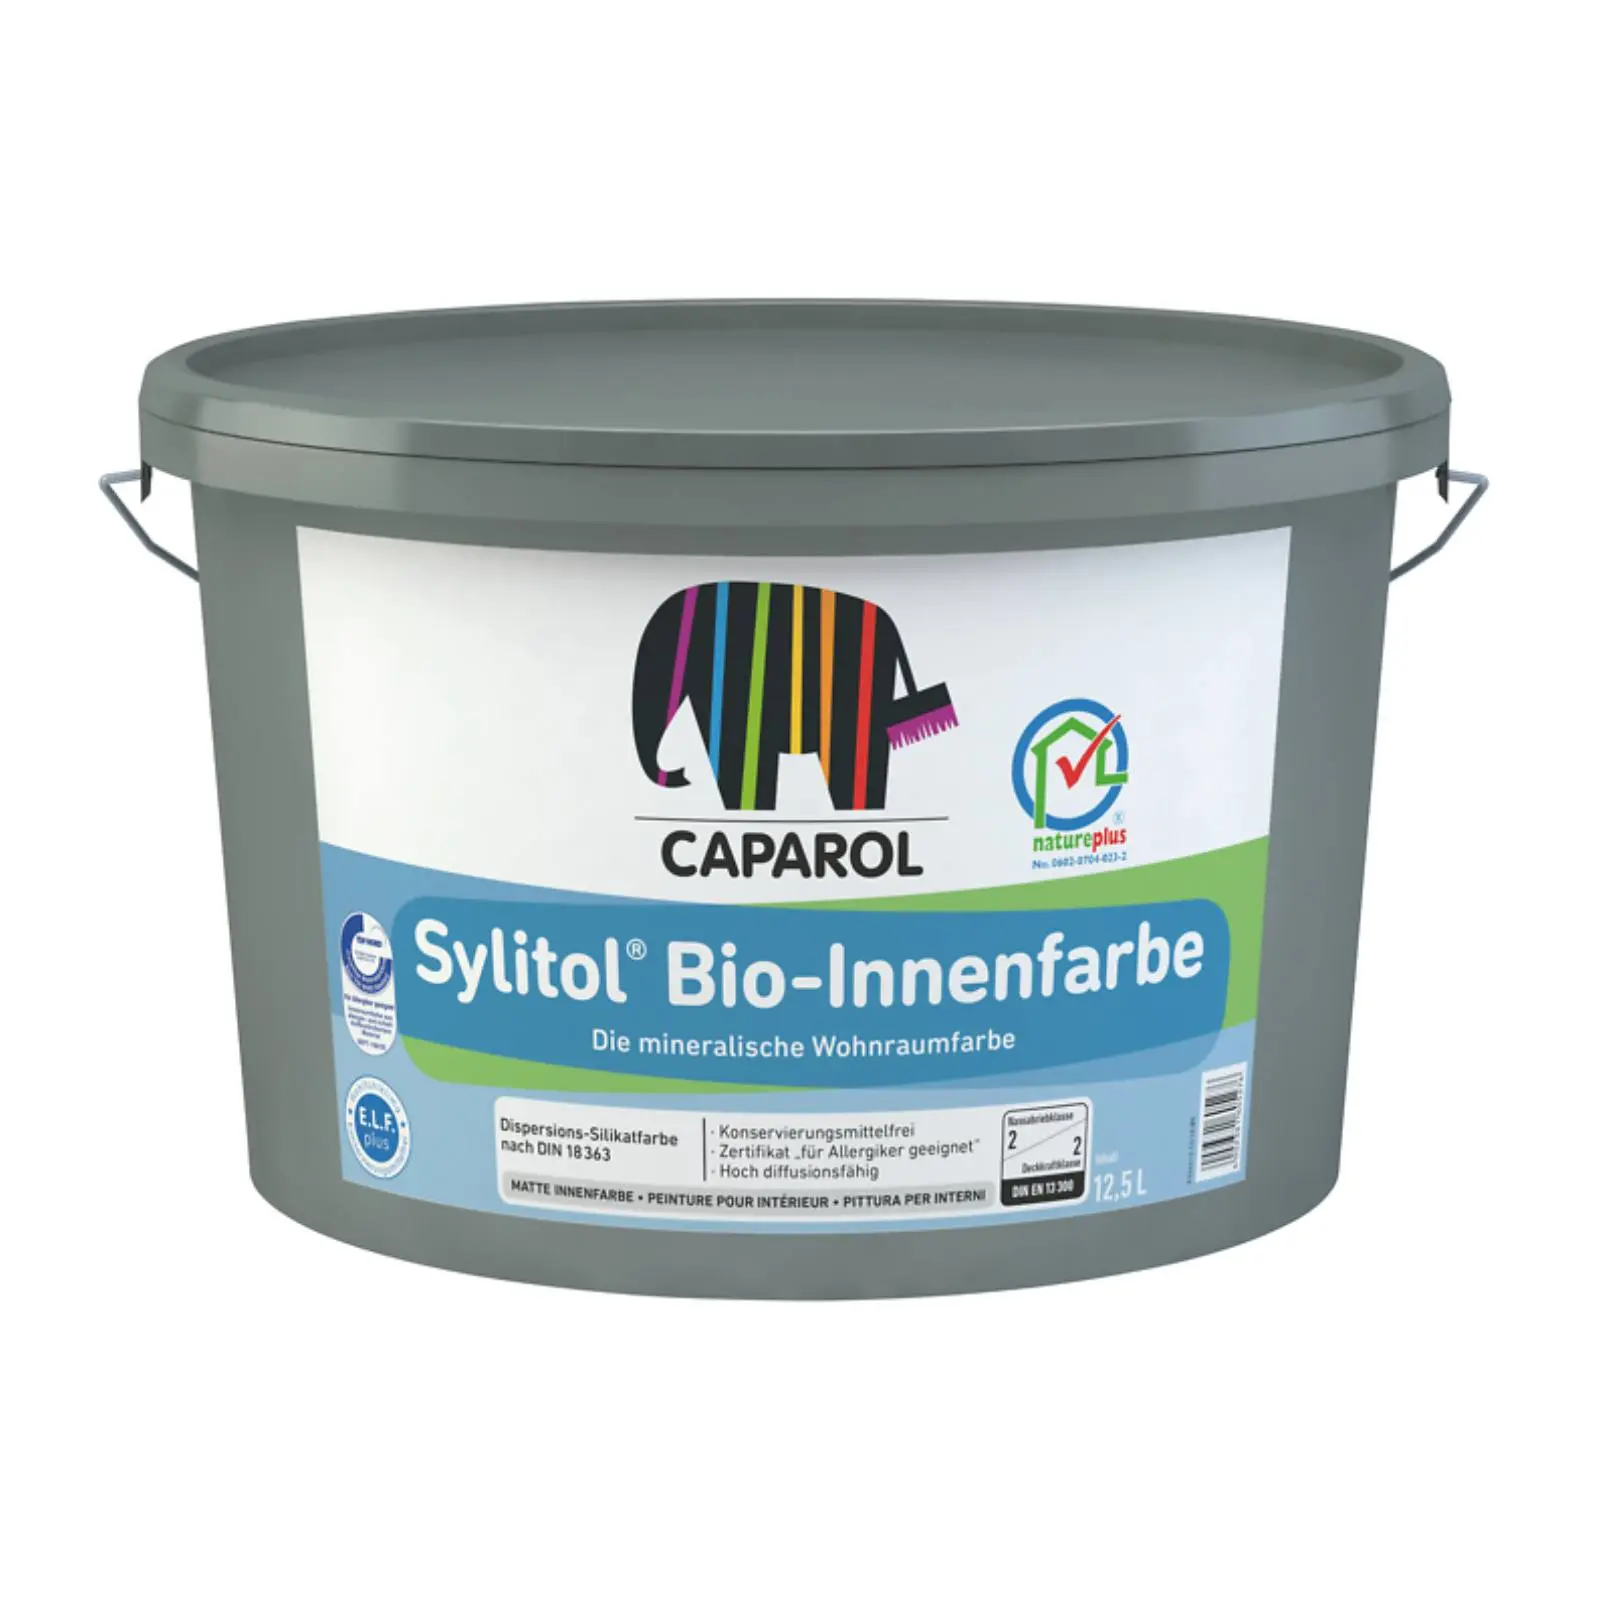 Caparol Sylitol Bio-Innenfarbe für Allergiker geeignet, weiß, 12,5l